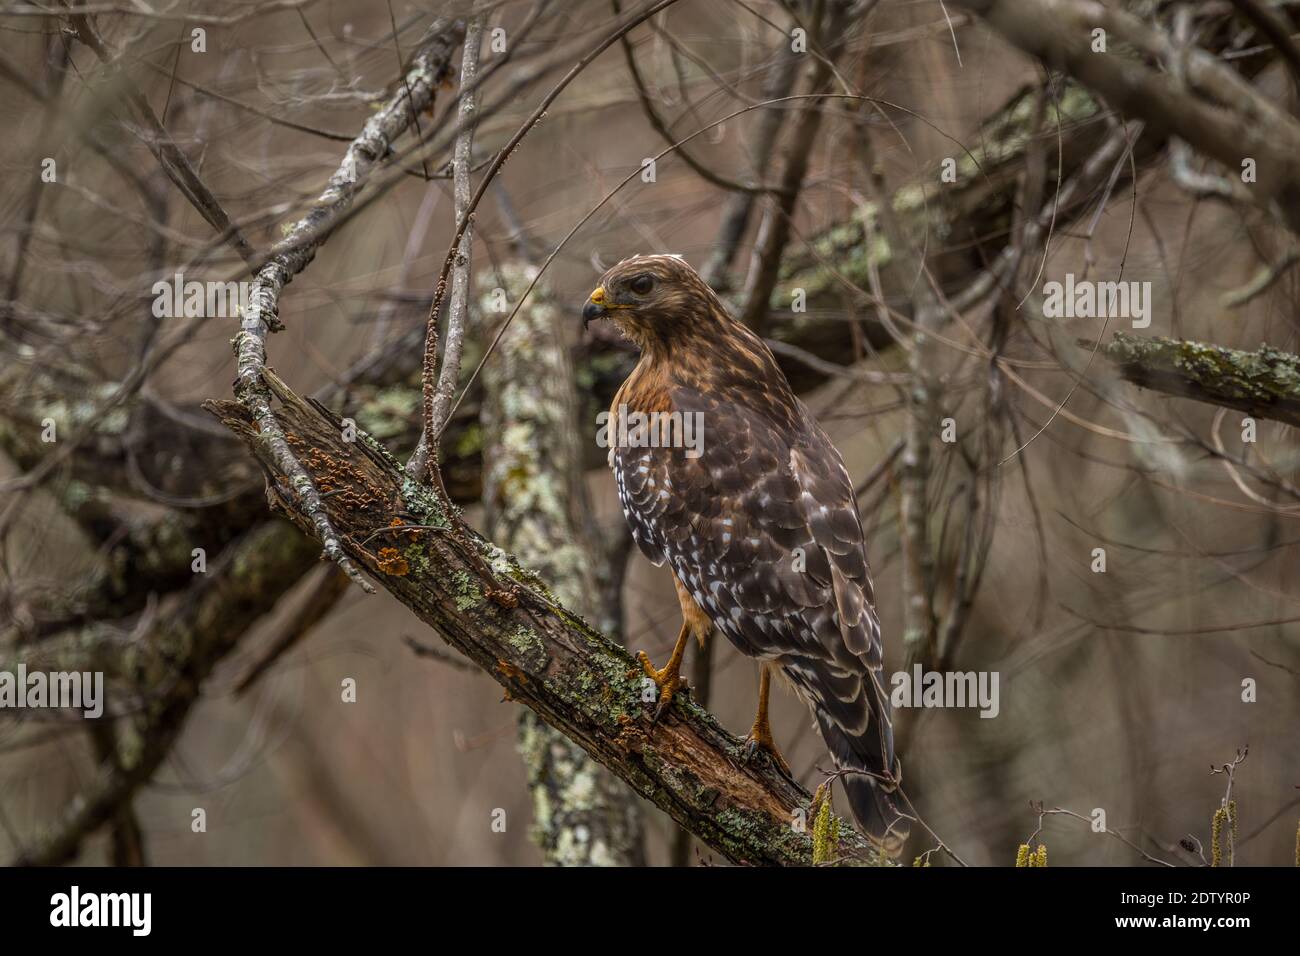 Un halcón adulto de cooper posado en una rama de árbol en decadencia en las profundidades del bosque en busca de presas a finales del invierno Foto de stock